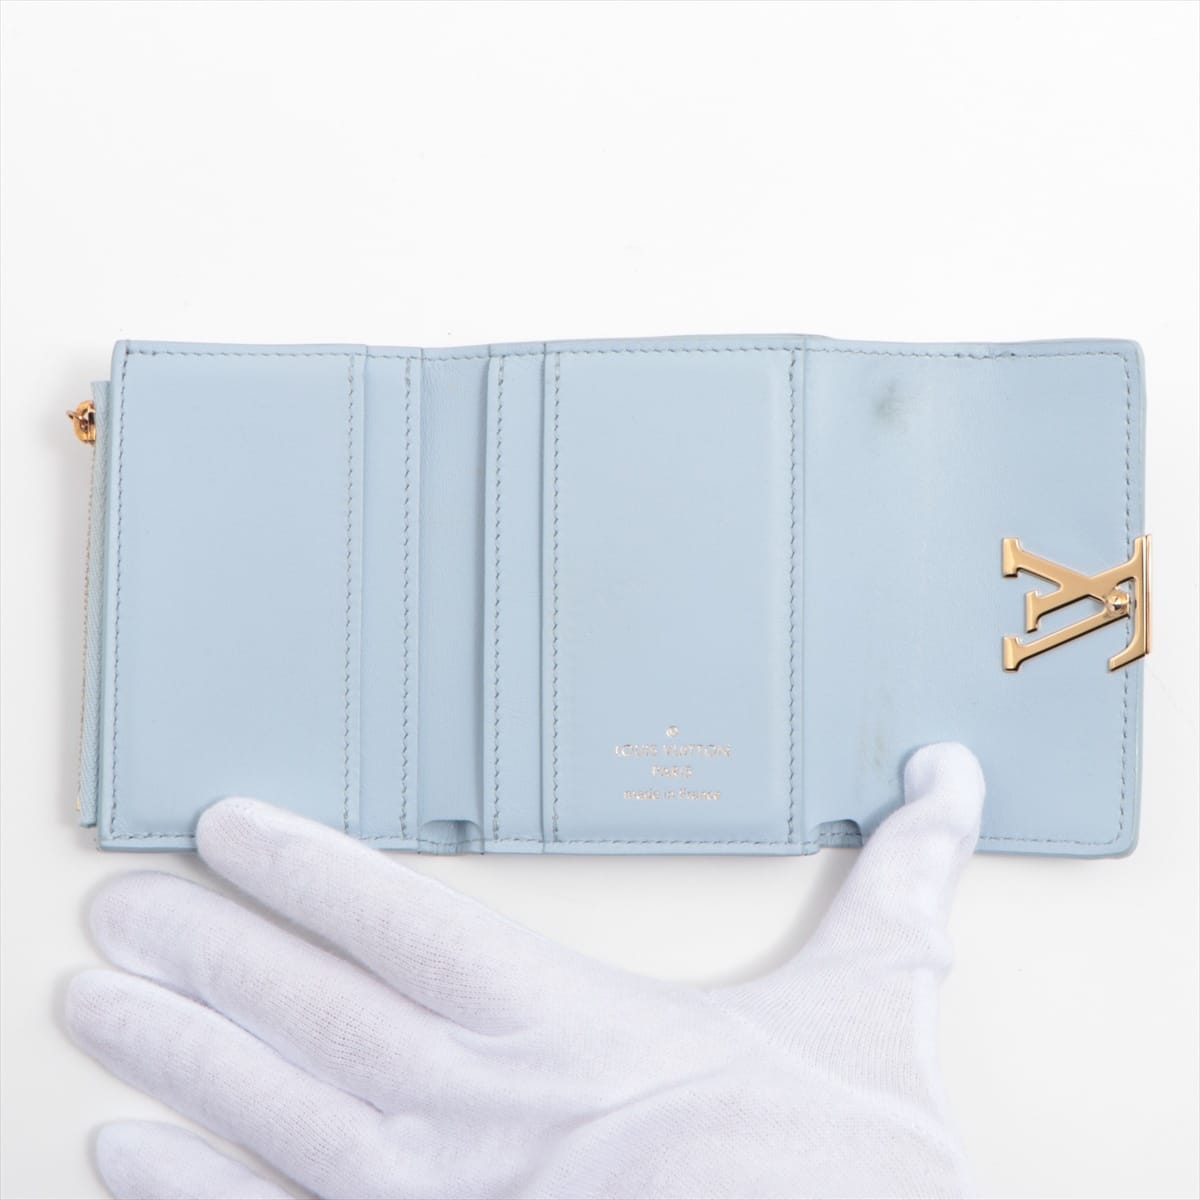 Louis Vuitton Taurillon Wallet Capucines XS M69061